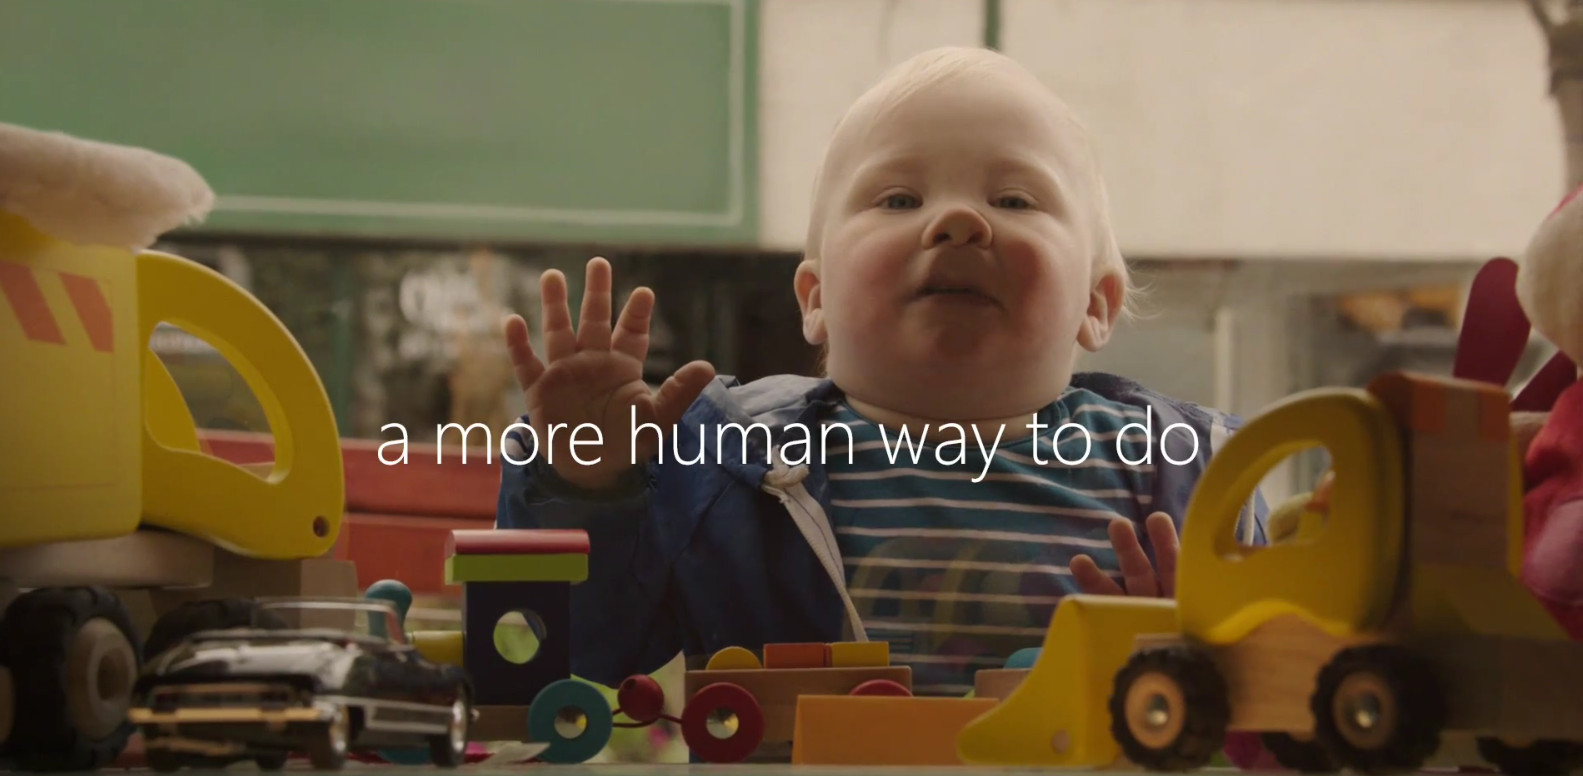 Microsoft เปิดตัวโฆษณา Windows 10 สุดน่ารักทั้ง 5 คลิปโดยใช้ “เด็ก” เป็นพรีเซนเตอร์ :)